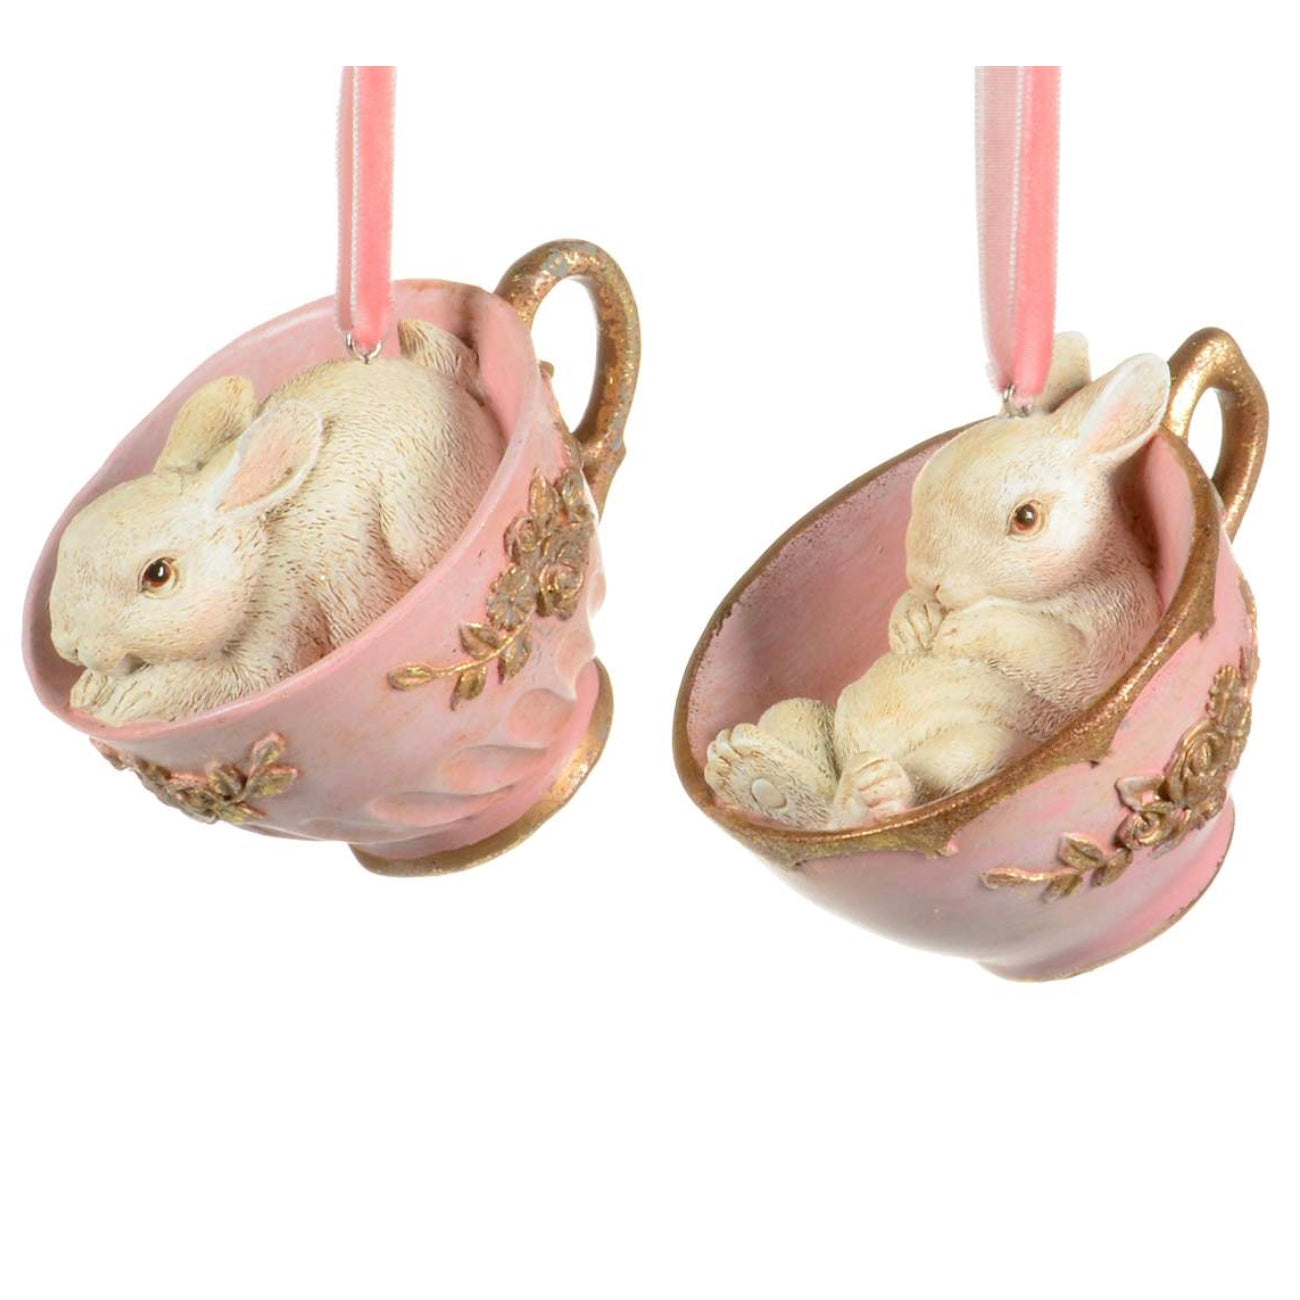 Rabbit Ornaments & Decorations